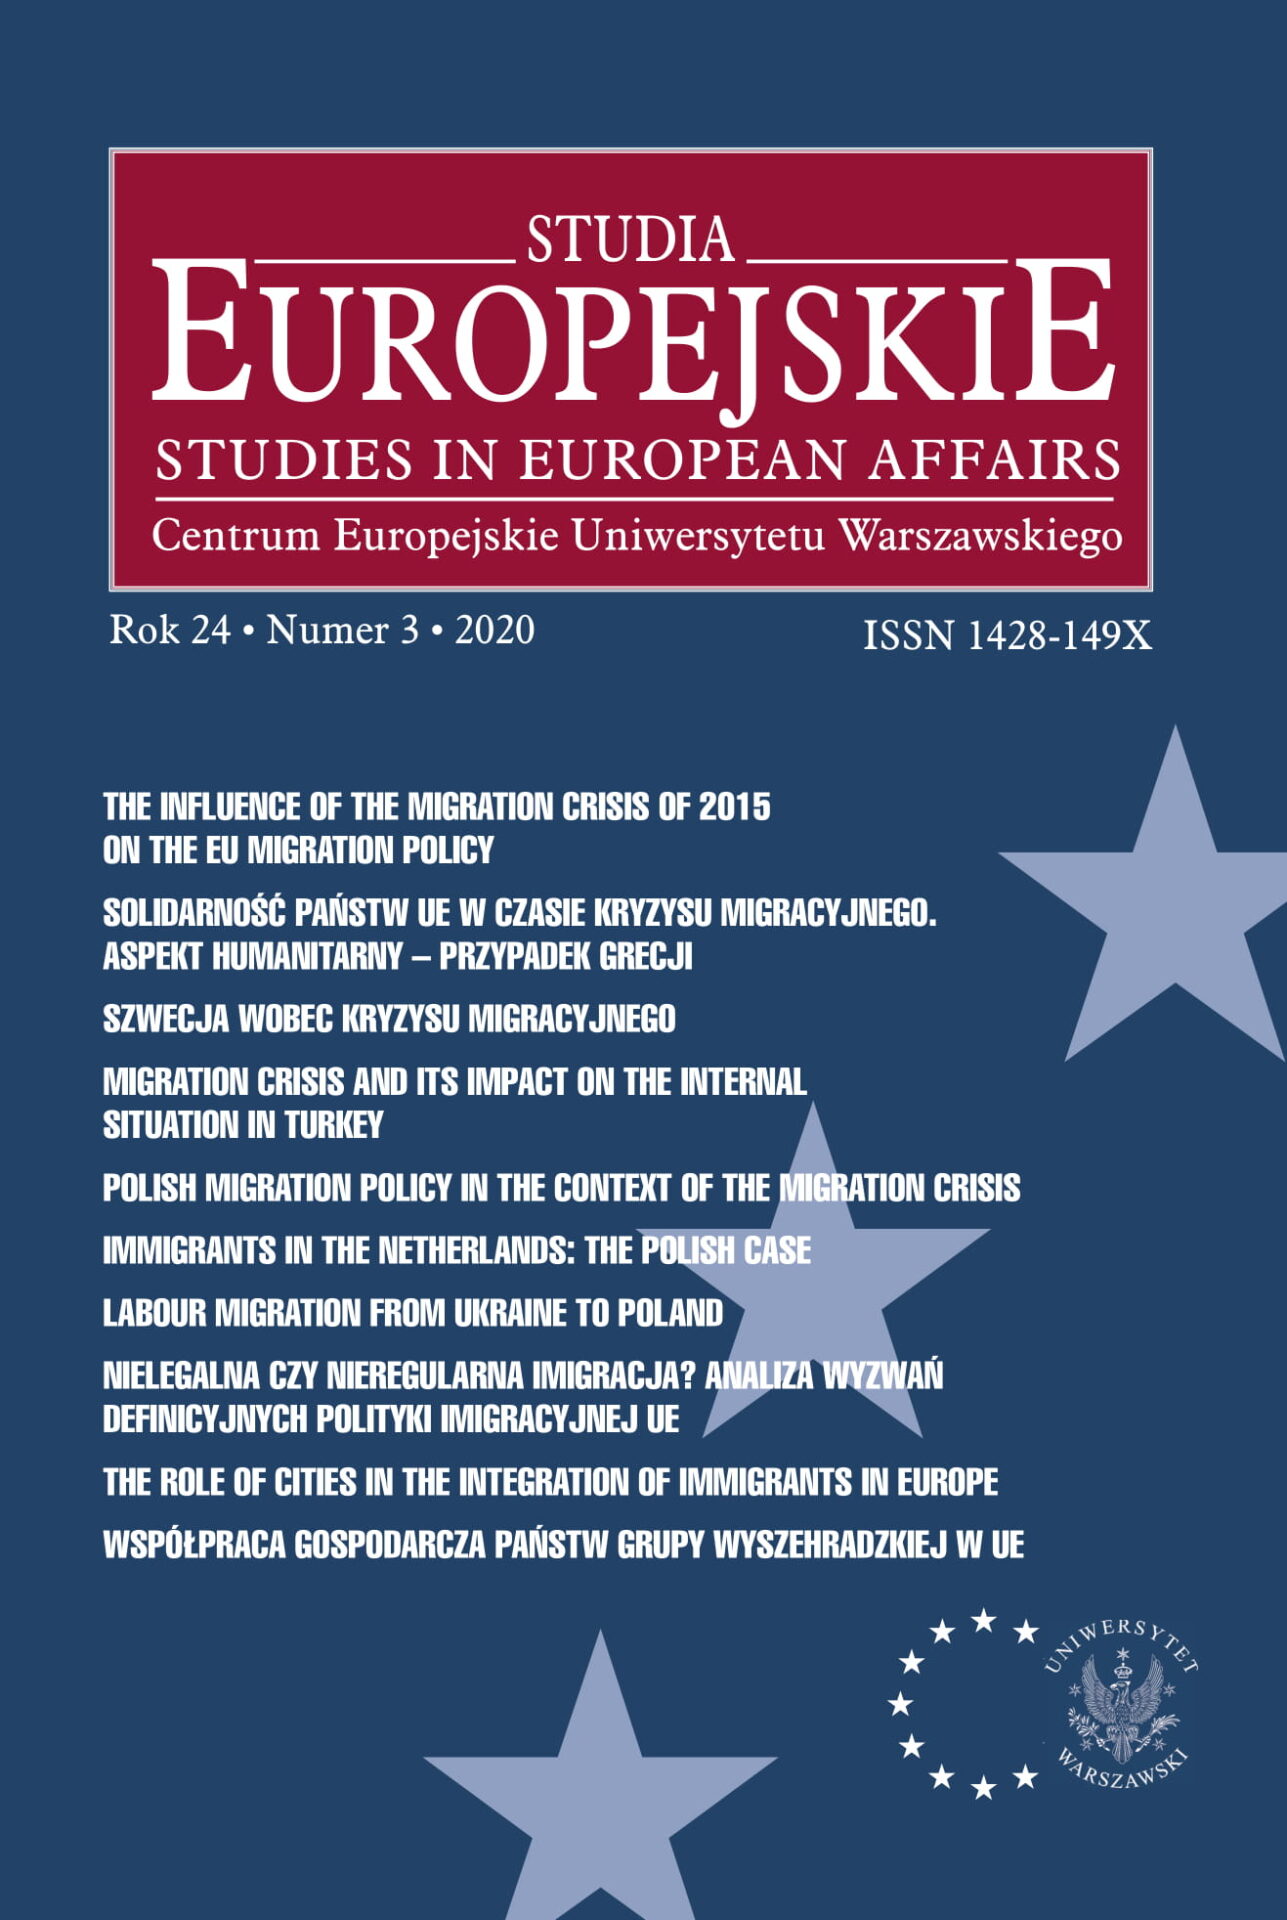 Rola i znaczenie współpracy gospodarczej państw Grupy Wyszehradzkiej w Unii Europejskiej od 2015 roku